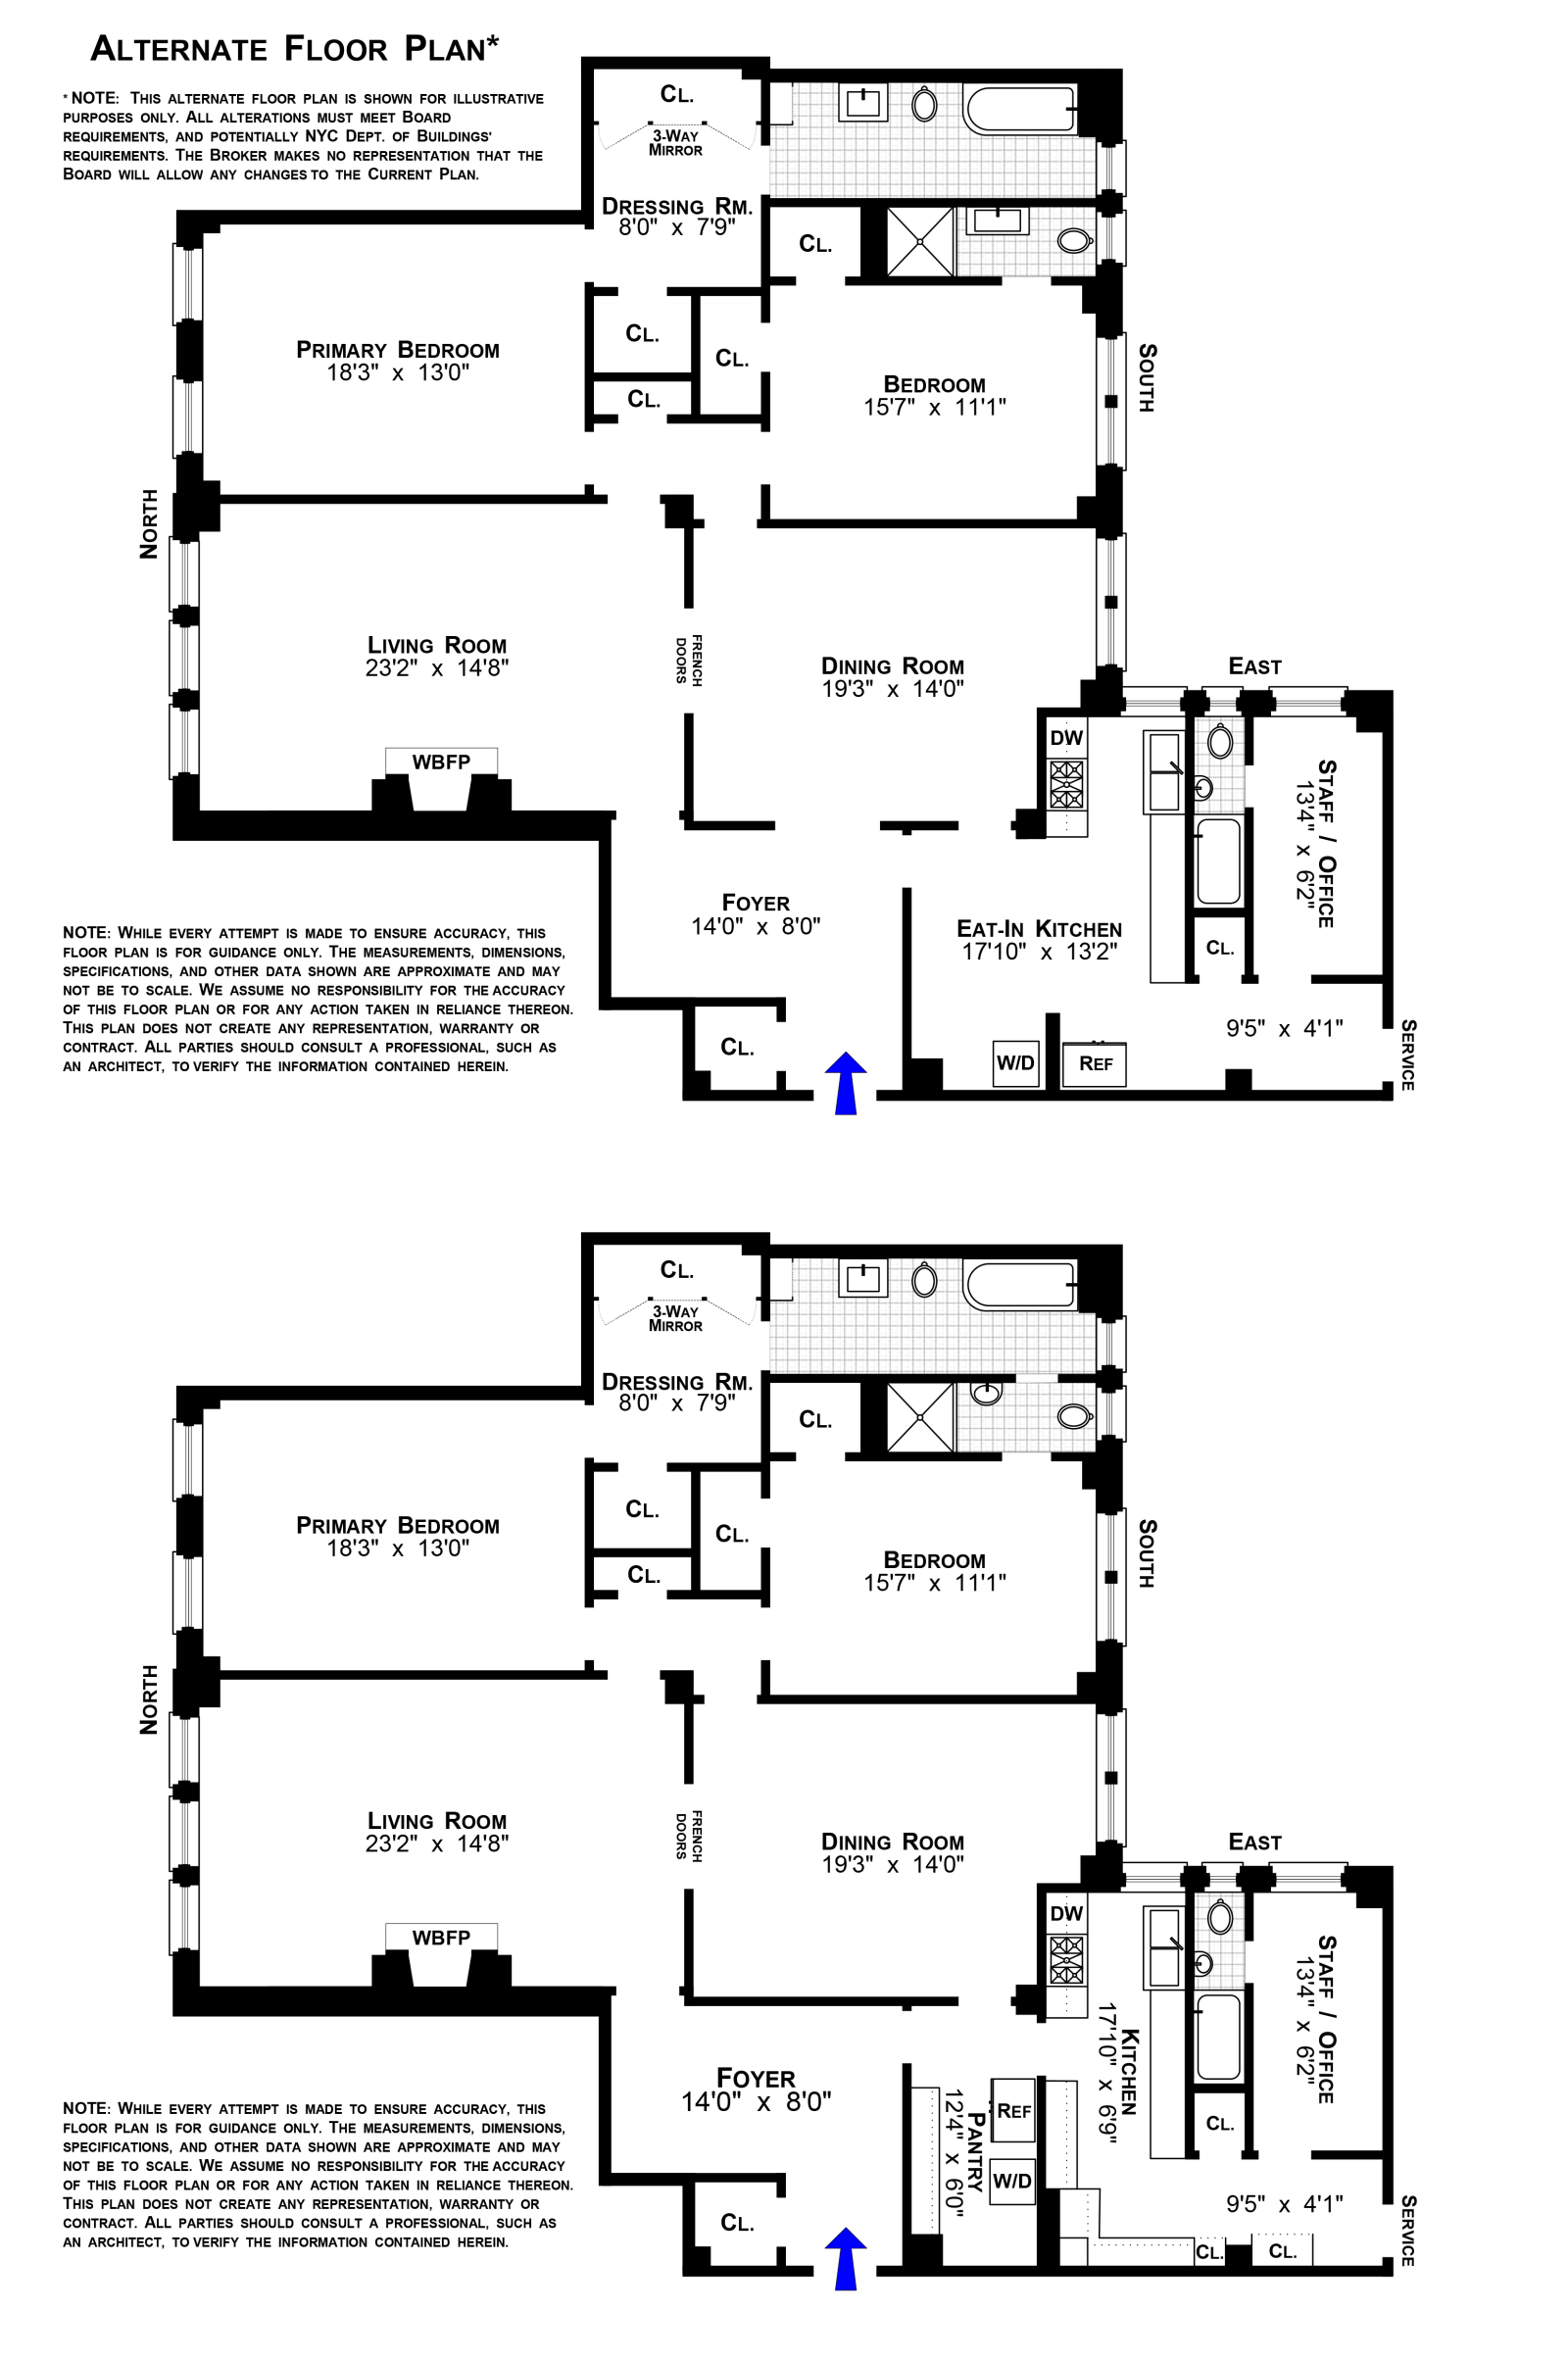 Floorplan for 336 Central Park West, 11F